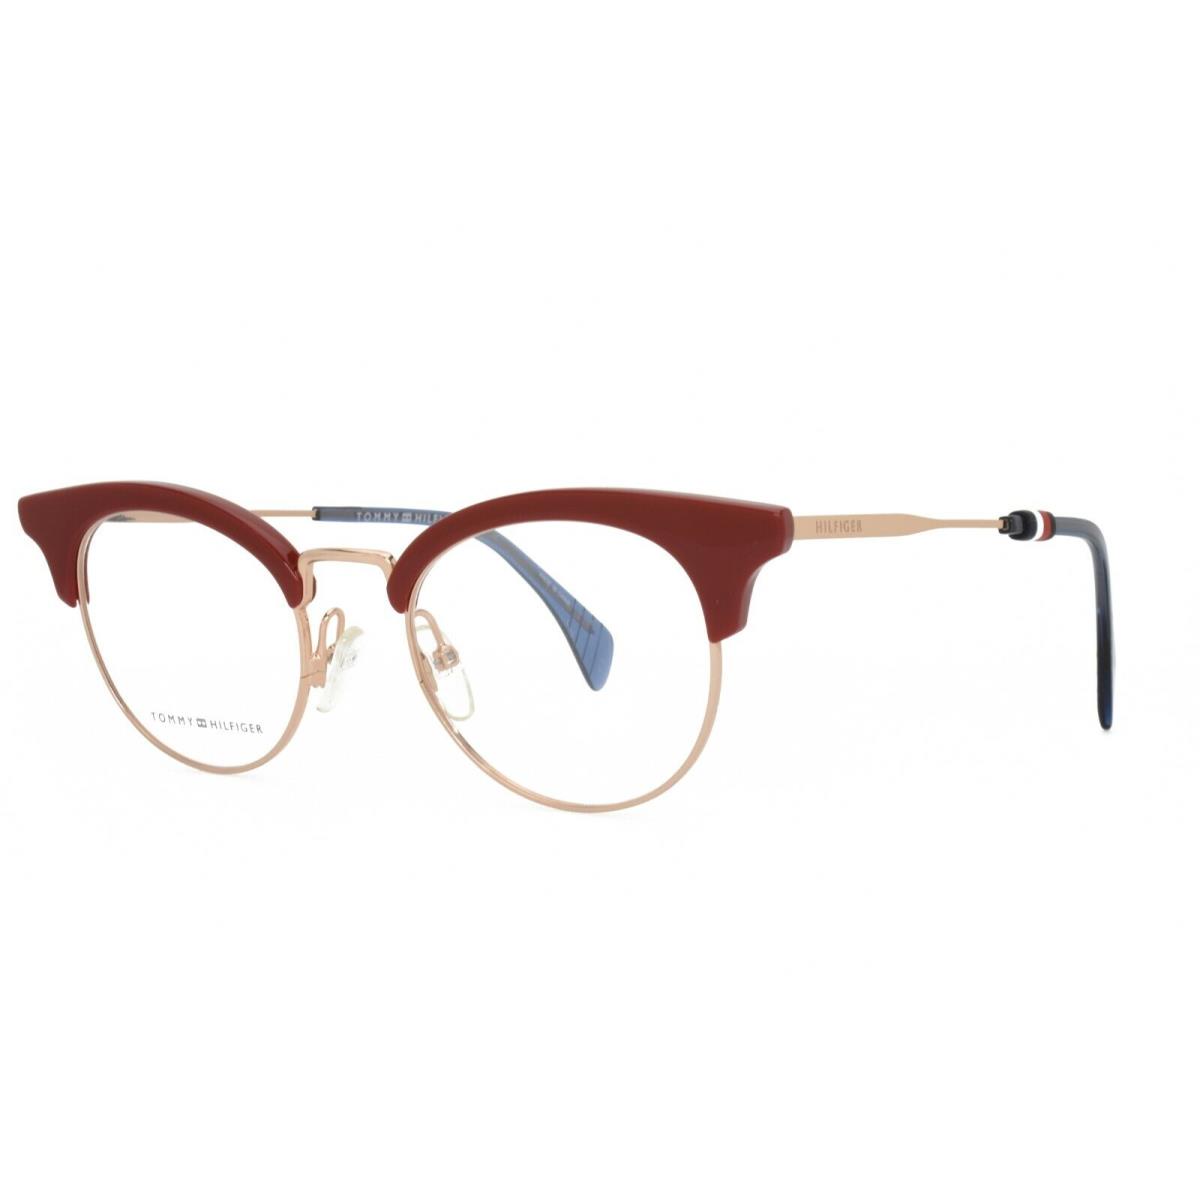 Tommy Hilfiger Eyeglasses 1540 35J 49-20-145 Red Gold Blue